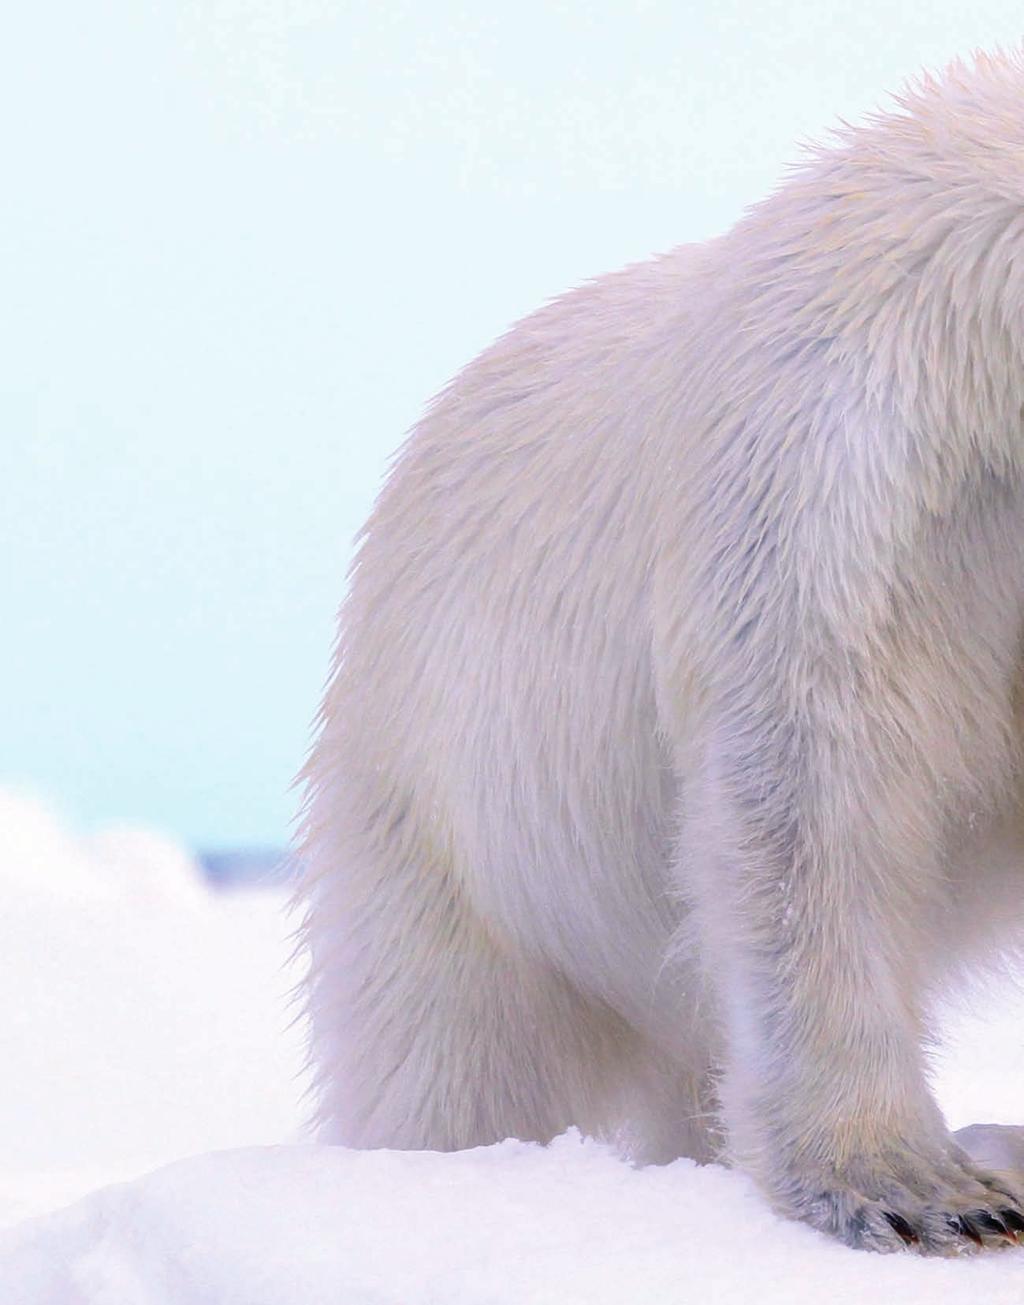 ARCTIC / The Svalbard Archipelago A soggy polar bear makes his